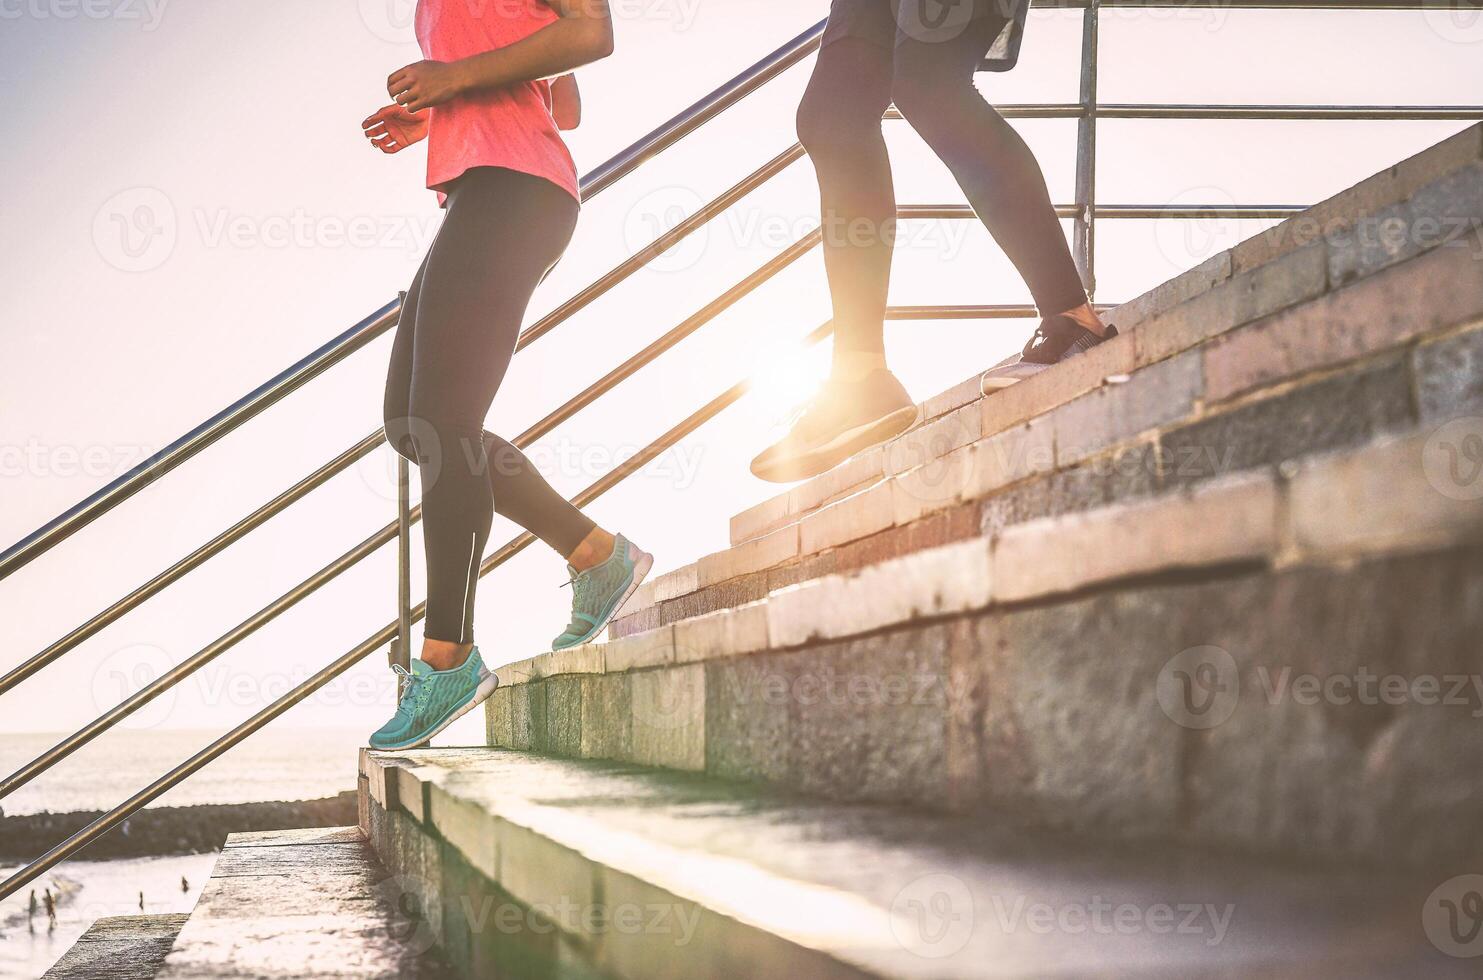 ver de corredores piernas teniendo un rutina de ejercicio sesión en ciudad escalera al aire libre - cerca arriba de personas corriendo a puesta de sol - deporte, correr, salud estilo de vida concepto - atención en Zapatos en izquierda foto